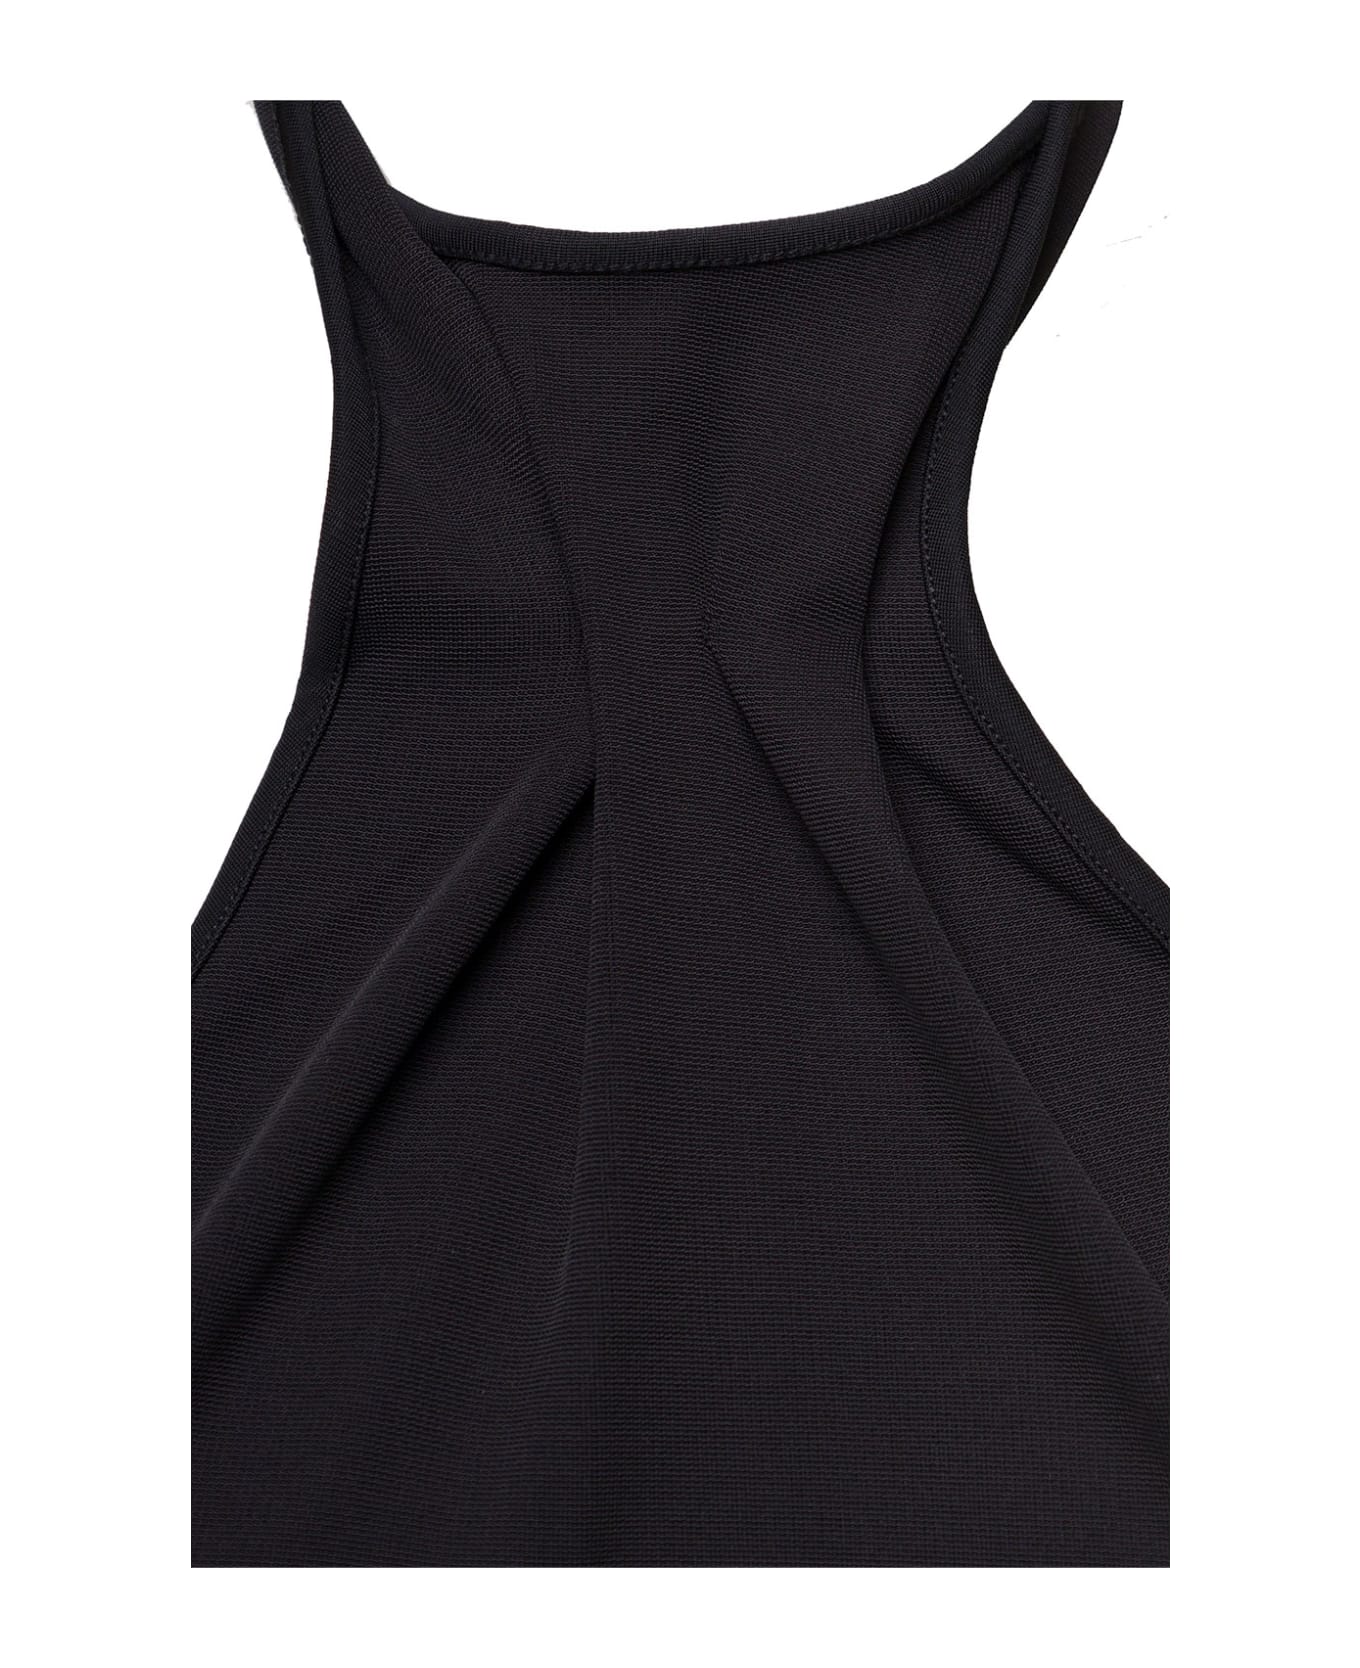 GAUGE81 'nashvi' Black Halterneck Bodysuit In Viscose Blend Woman Gauge81 - Black